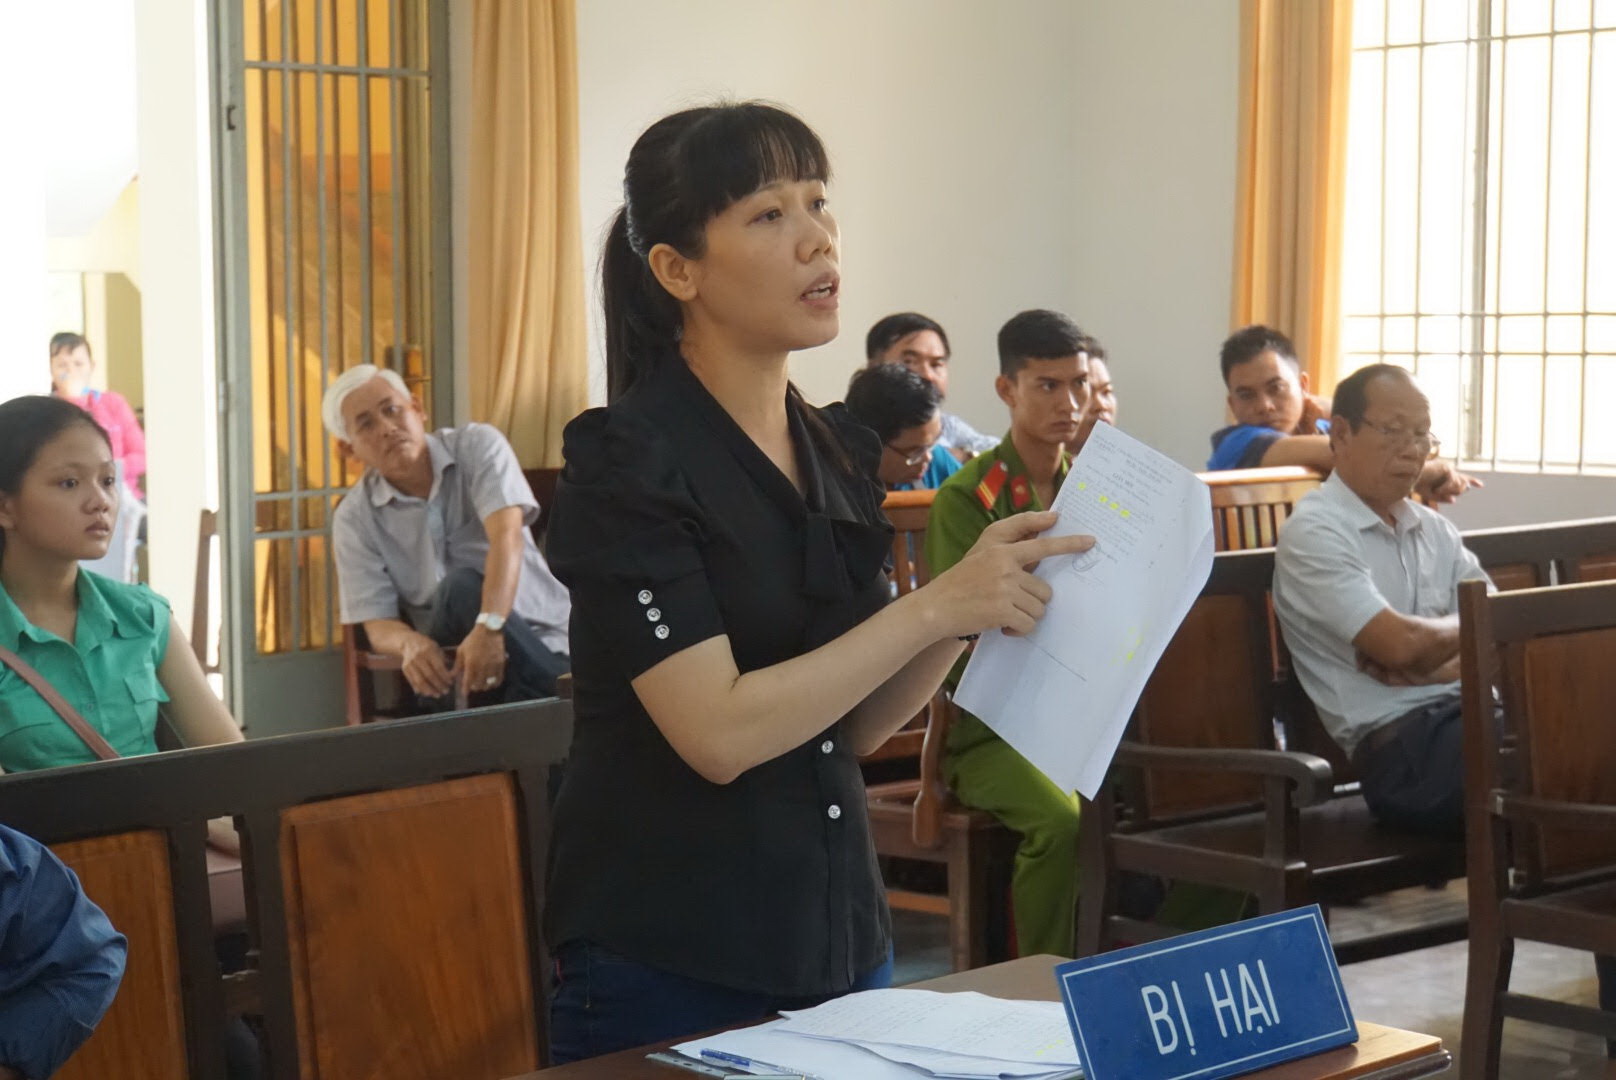 Bà Ánh Ngọc tố cáo hành vi bắt trói người trái pháp luật của nhóm nhân viên bảo vệ rừng - Ảnh: Hà Mi